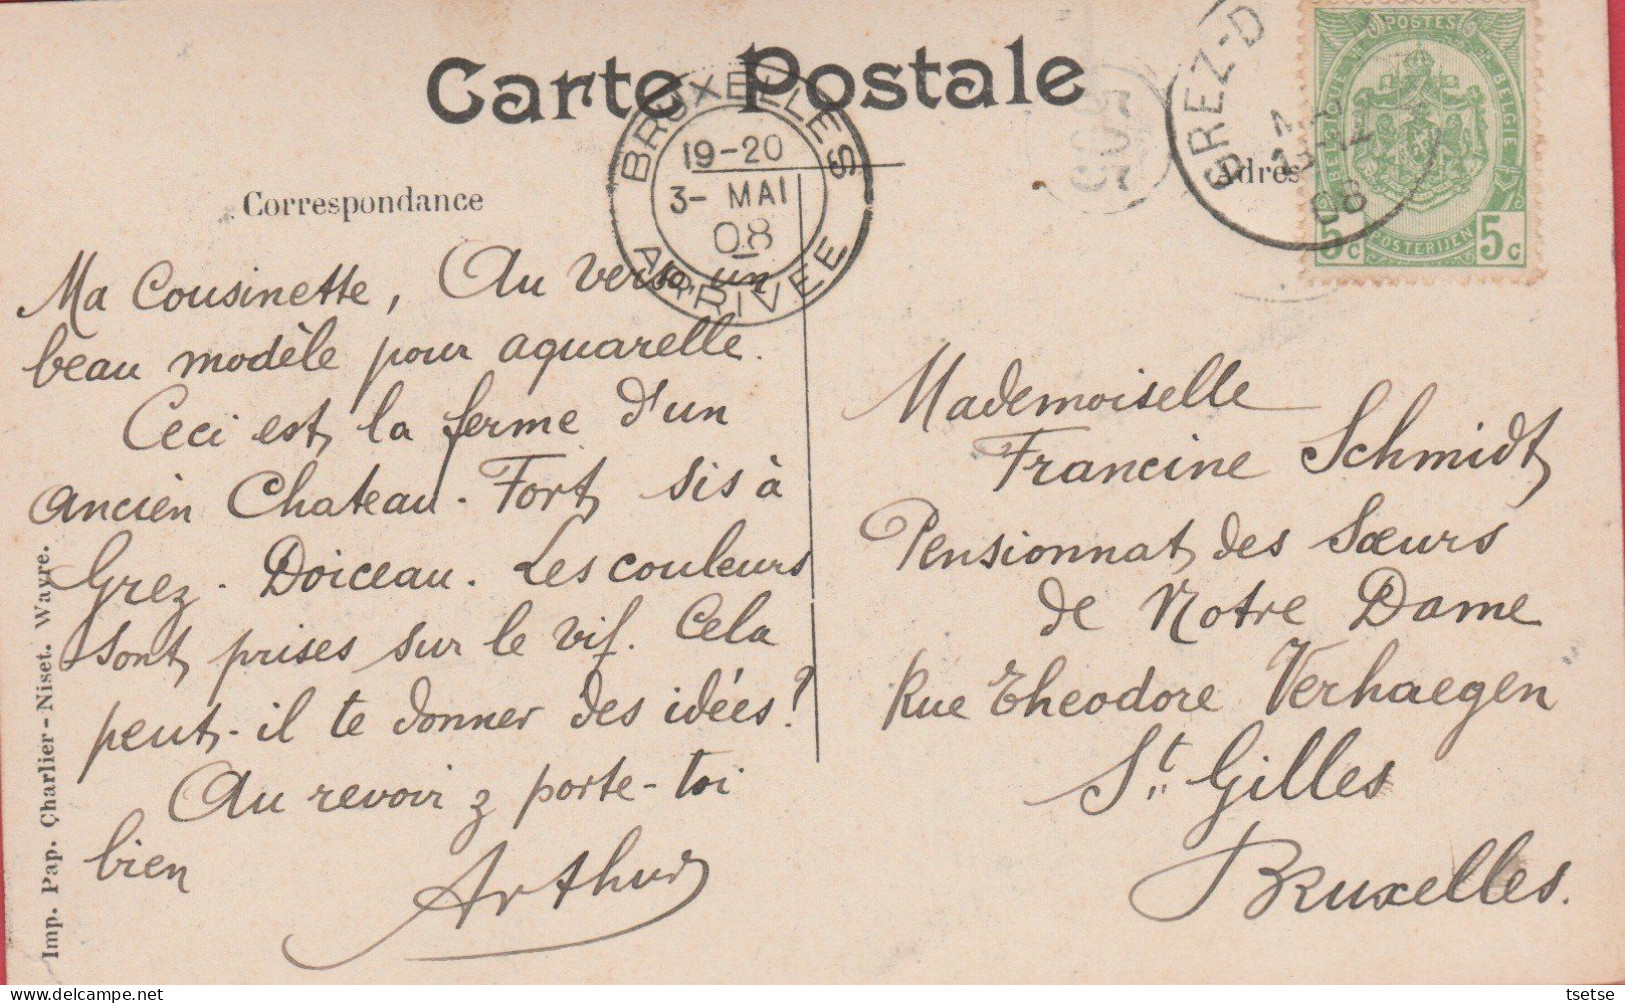 Grez-Doiceau - Château -1908 ( Voir Verso ) - Grez-Doiceau